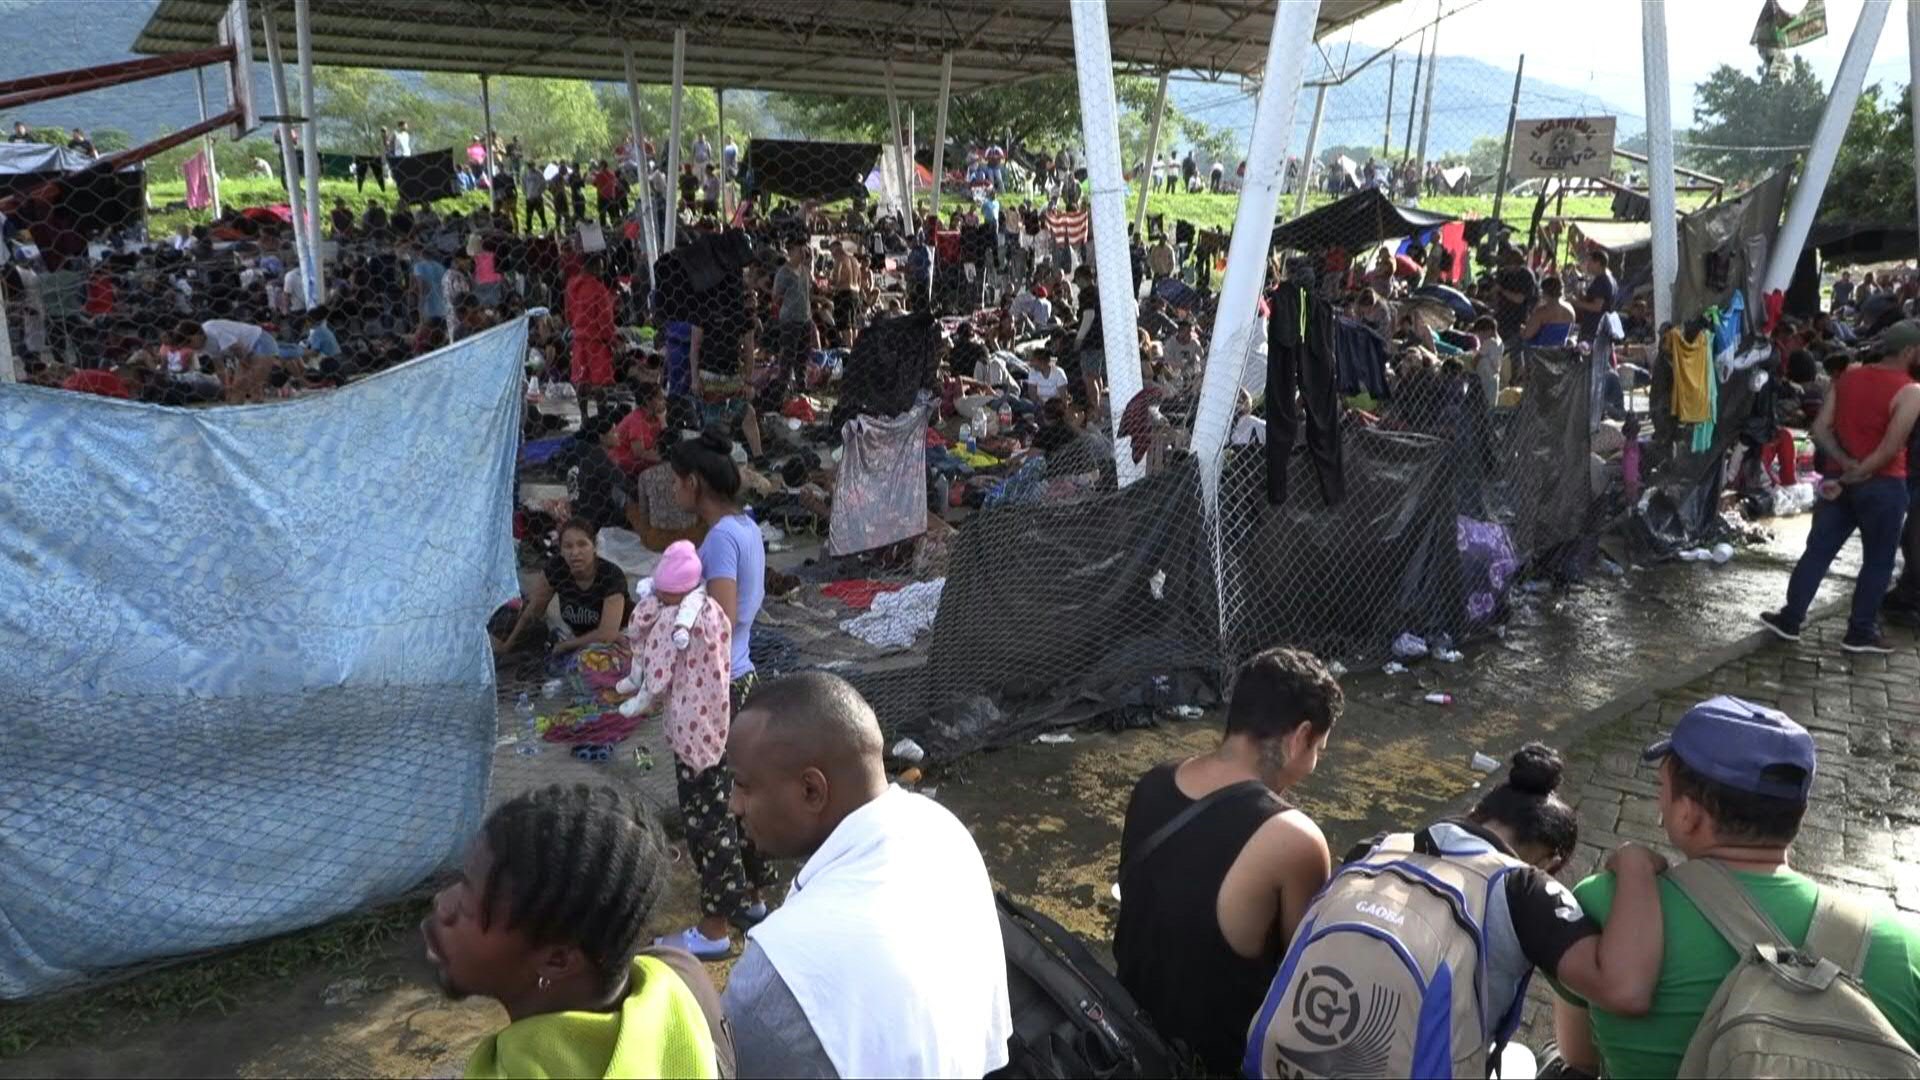 La caravana de miles de migrantes irregulares que recorre México a la espera de negociar con autoridades migratorias salvoconductos que les permitan seguir la marcha.